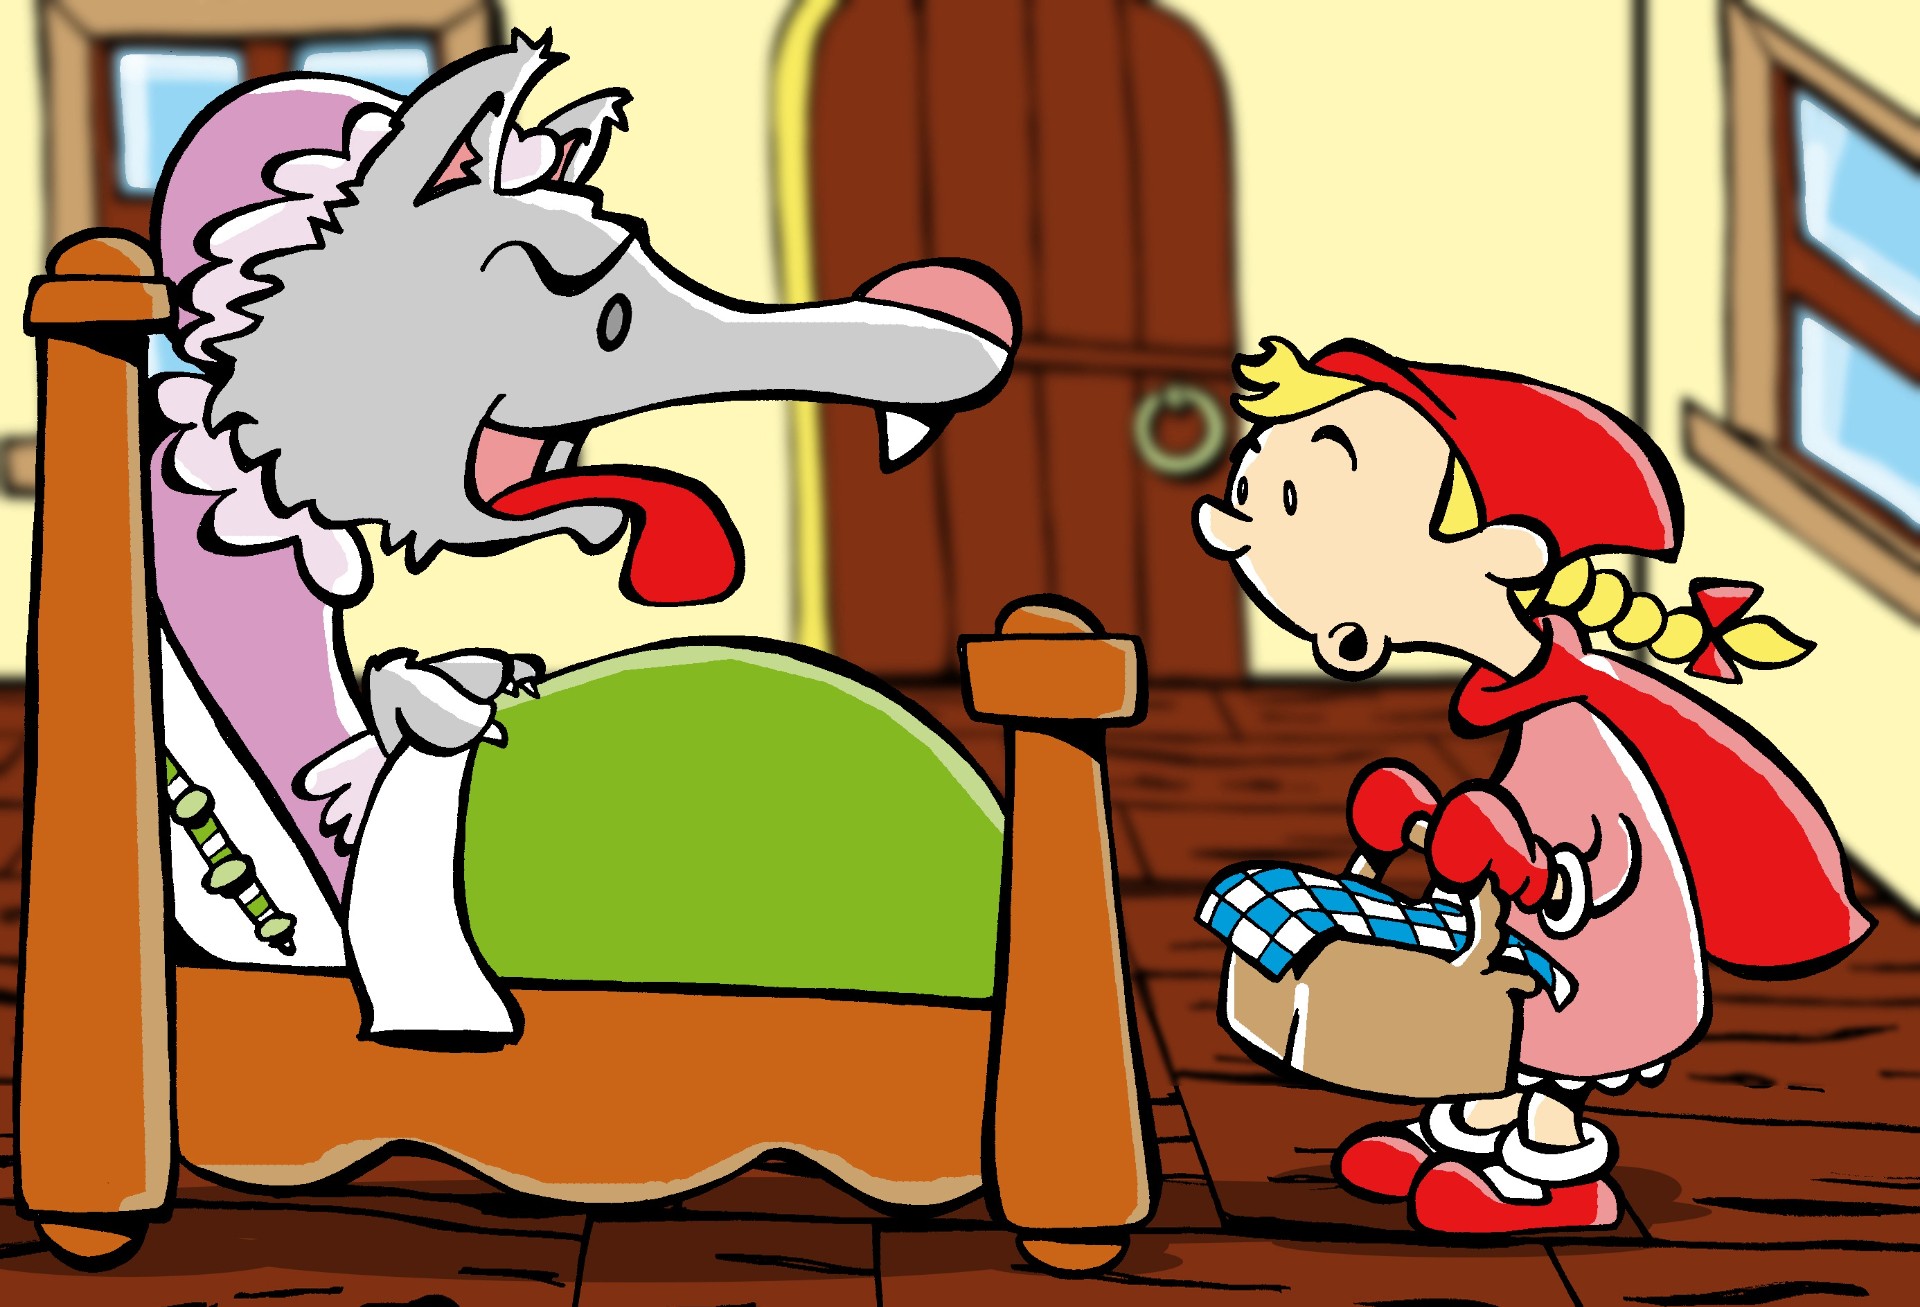 《小红帽与大灰狼》-儿童插画风格插画设计作品-设计人才灵活用工-设计DNA